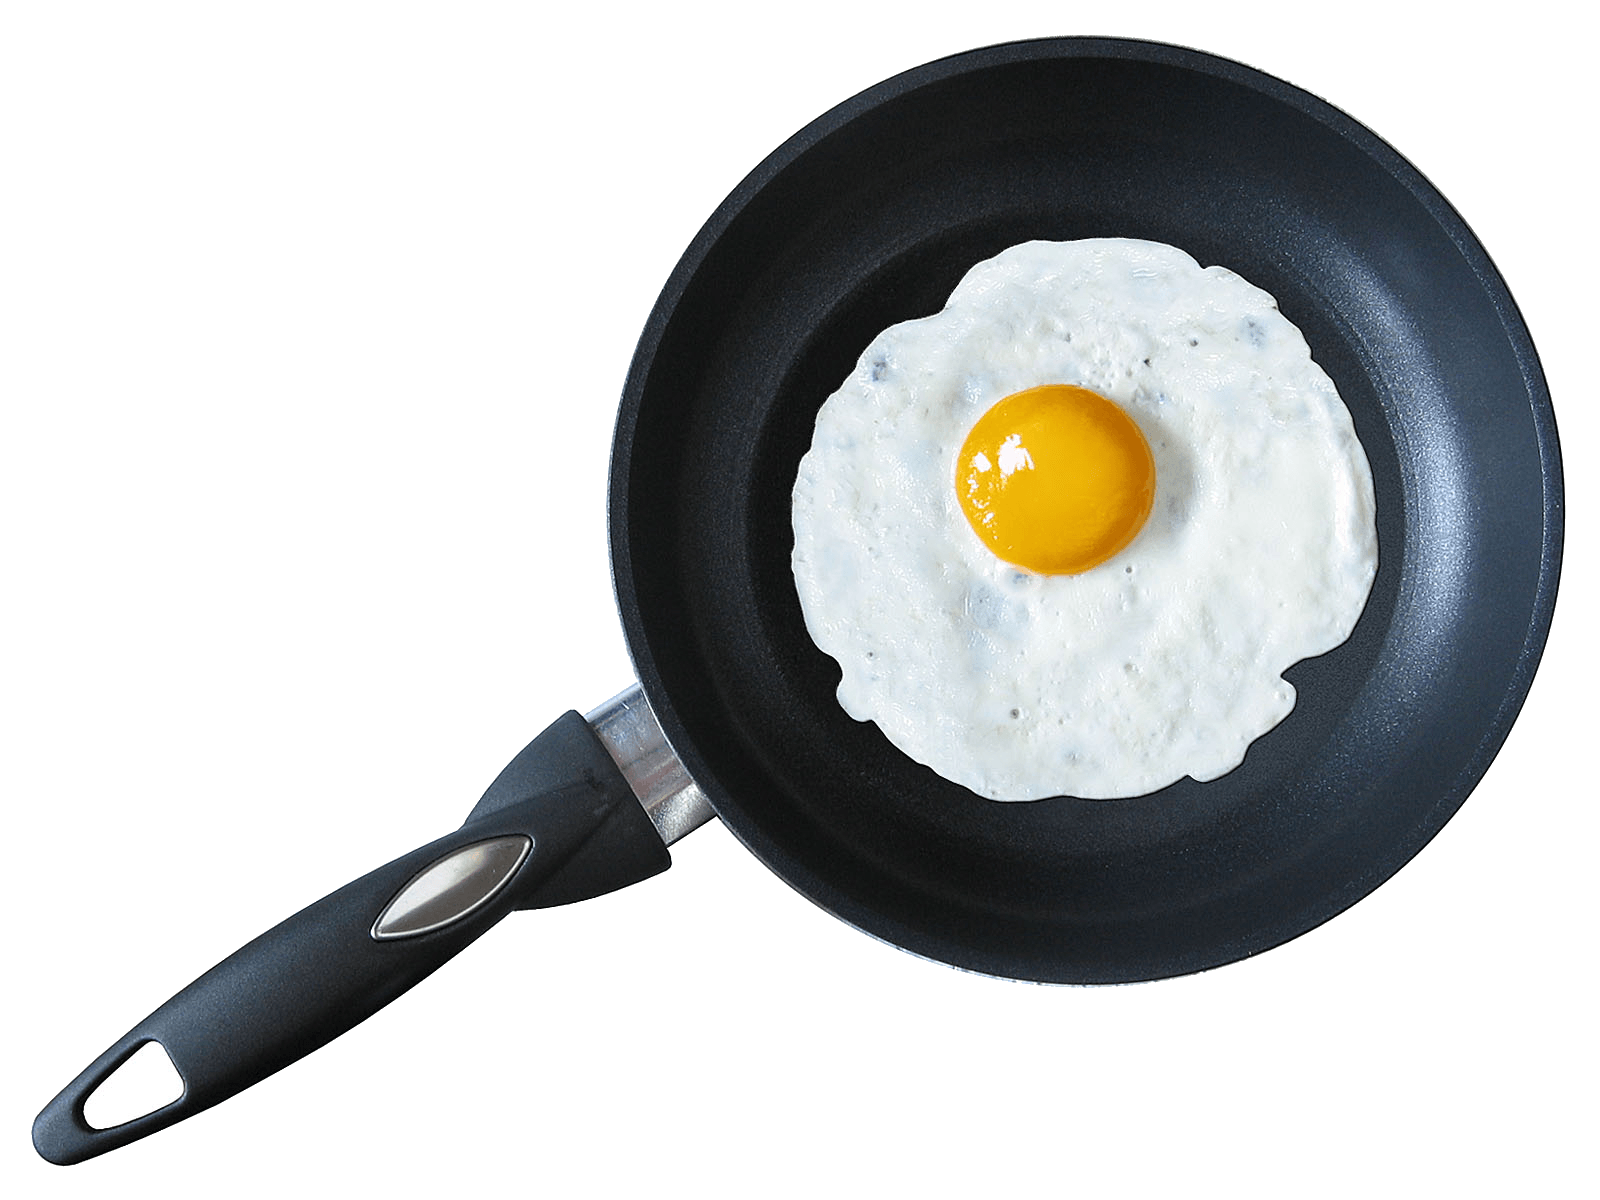 Immagine Trasparente a metà uovo fritto fritto